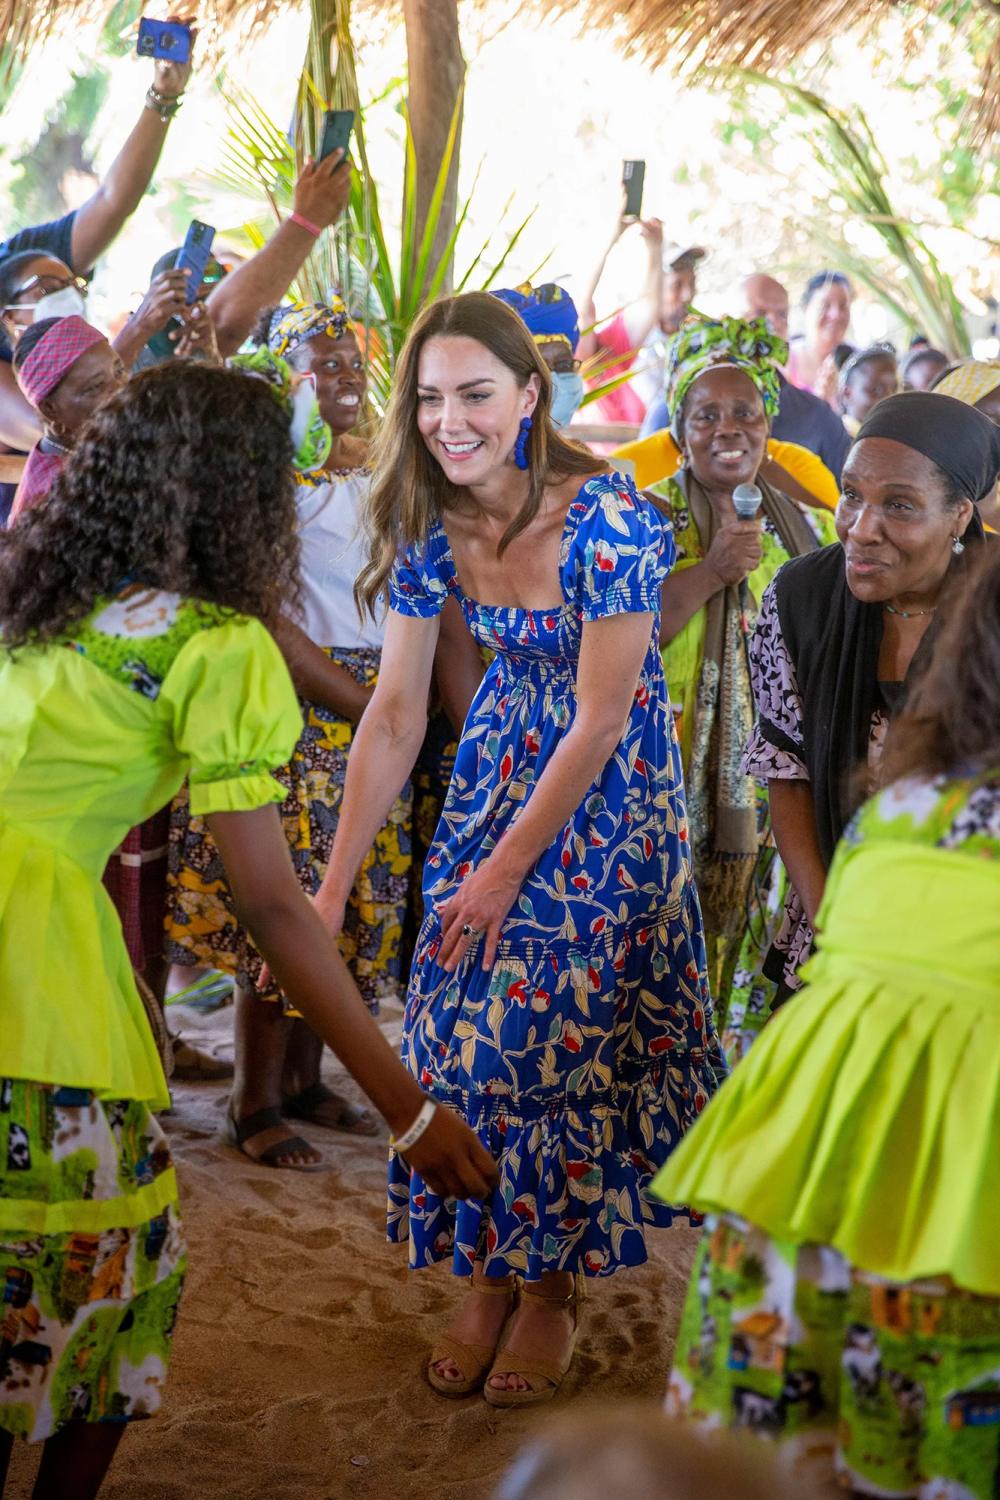 Thời trang công nương Kate Middleton trong chuyến công du Caribbean